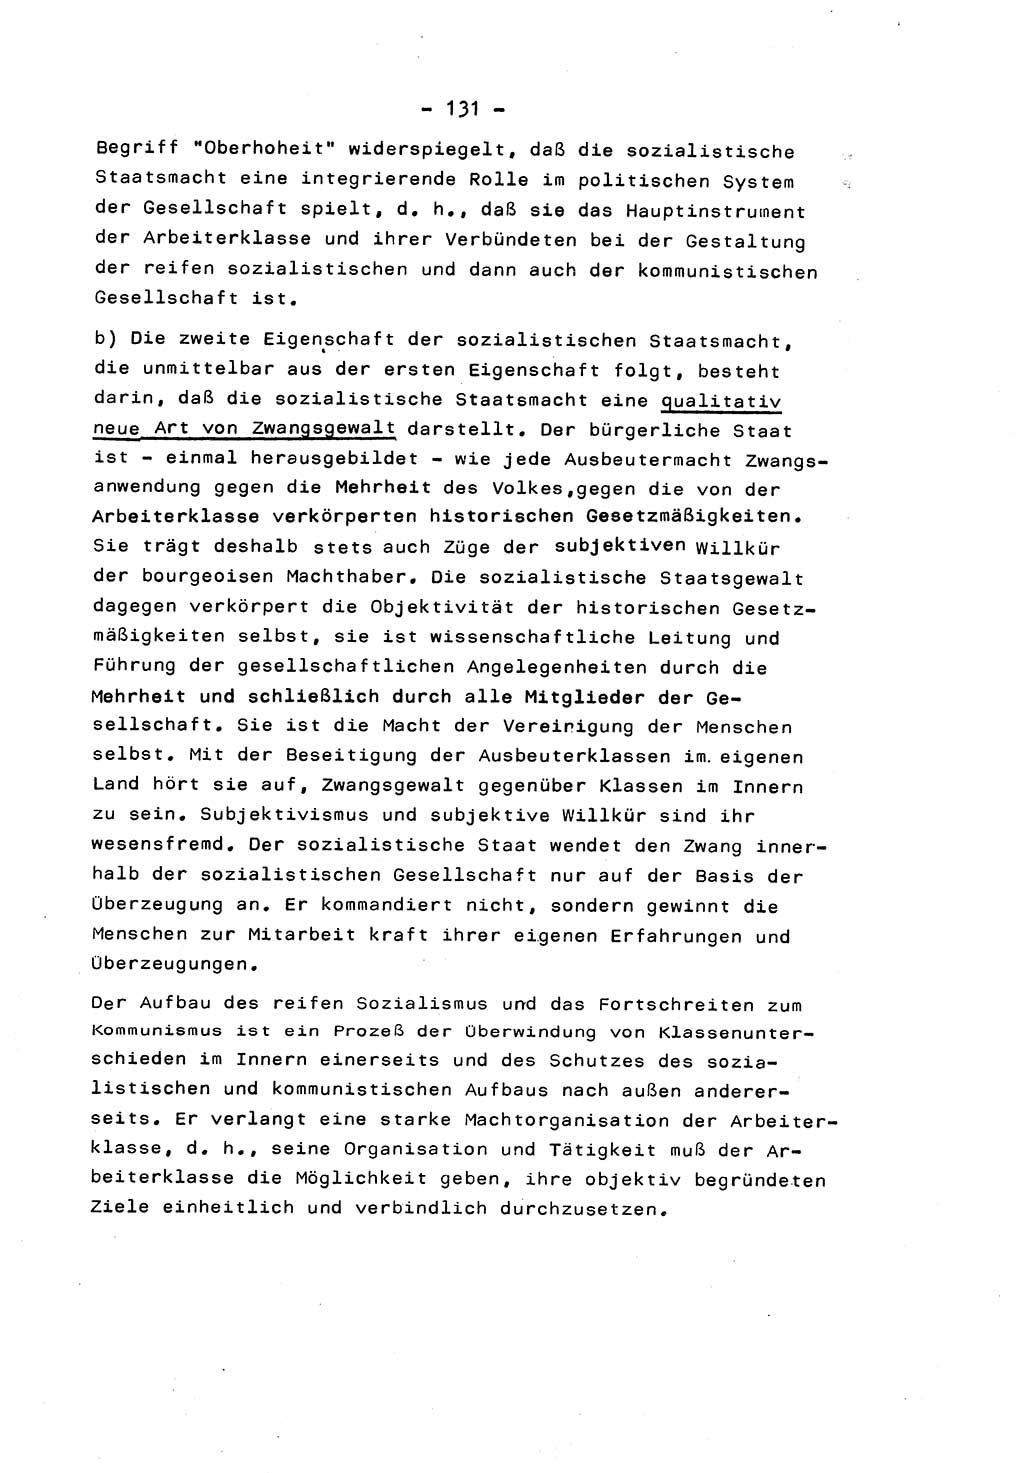 Marxistisch-leninistische Staats- und Rechtstheorie [Deutsche Demokratische Republik (DDR)] 1975, Seite 131 (ML St.-R.-Th. DDR 1975, S. 131)